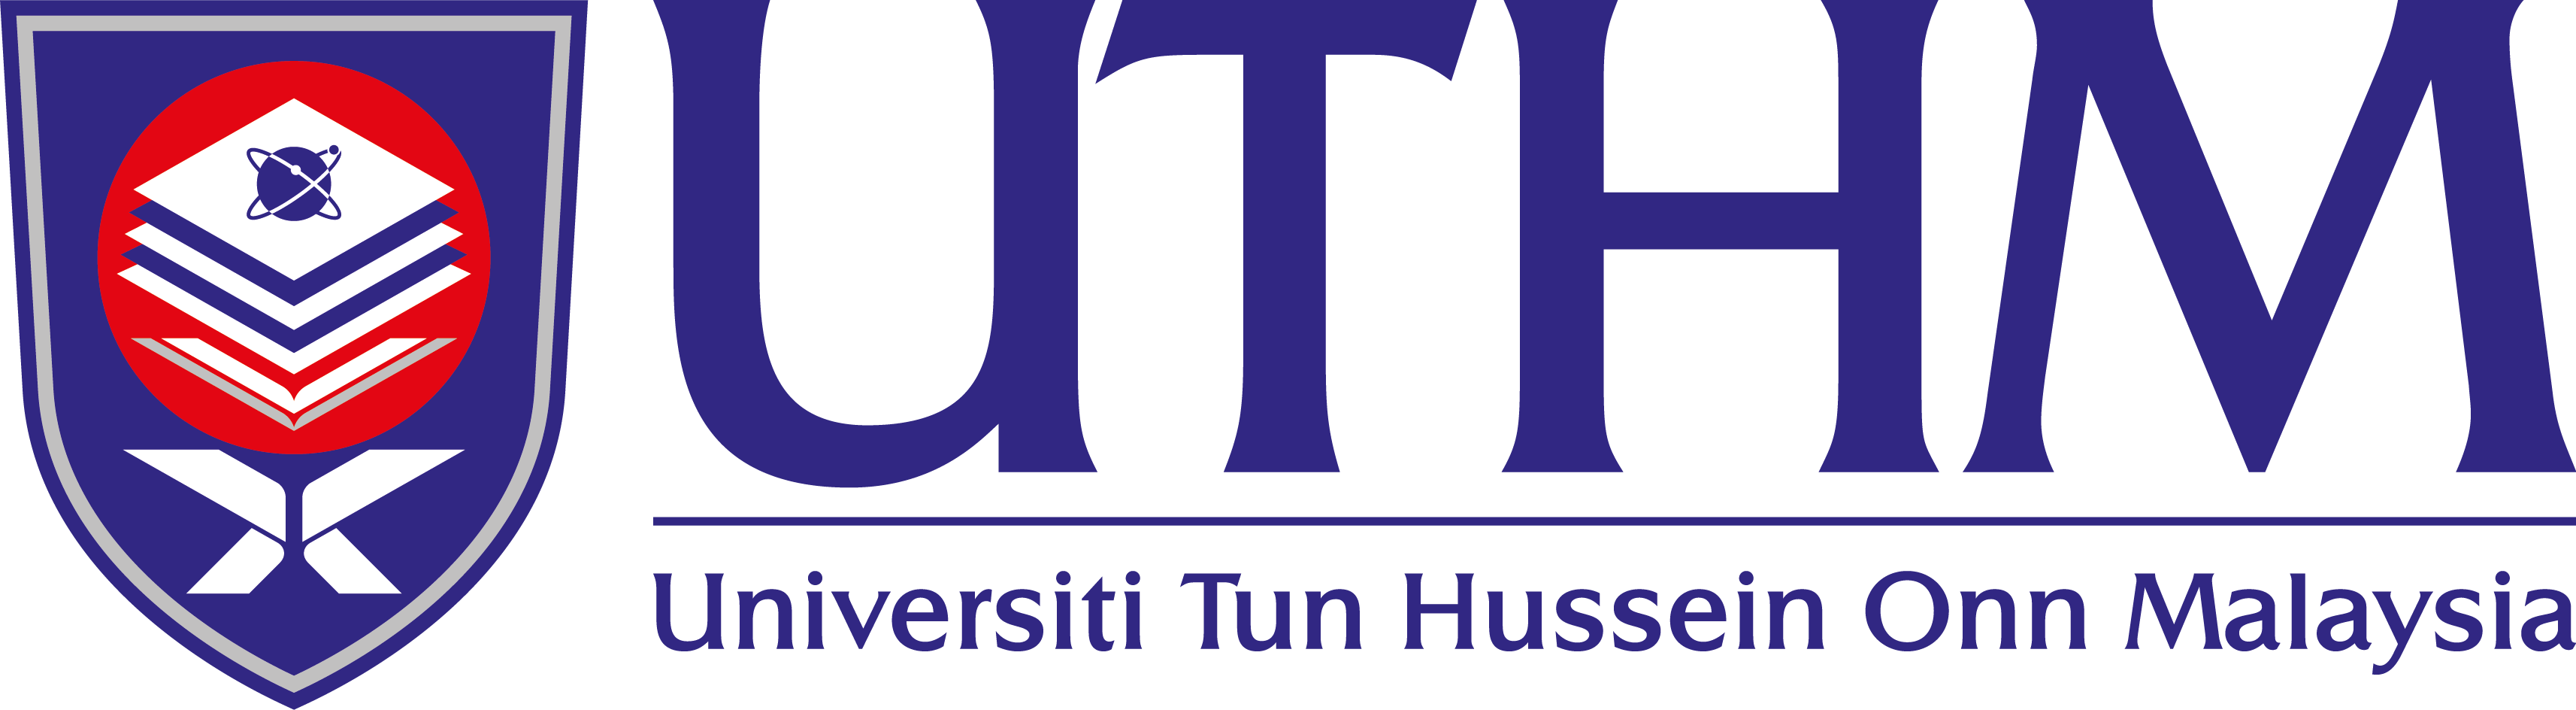 logo uthm web